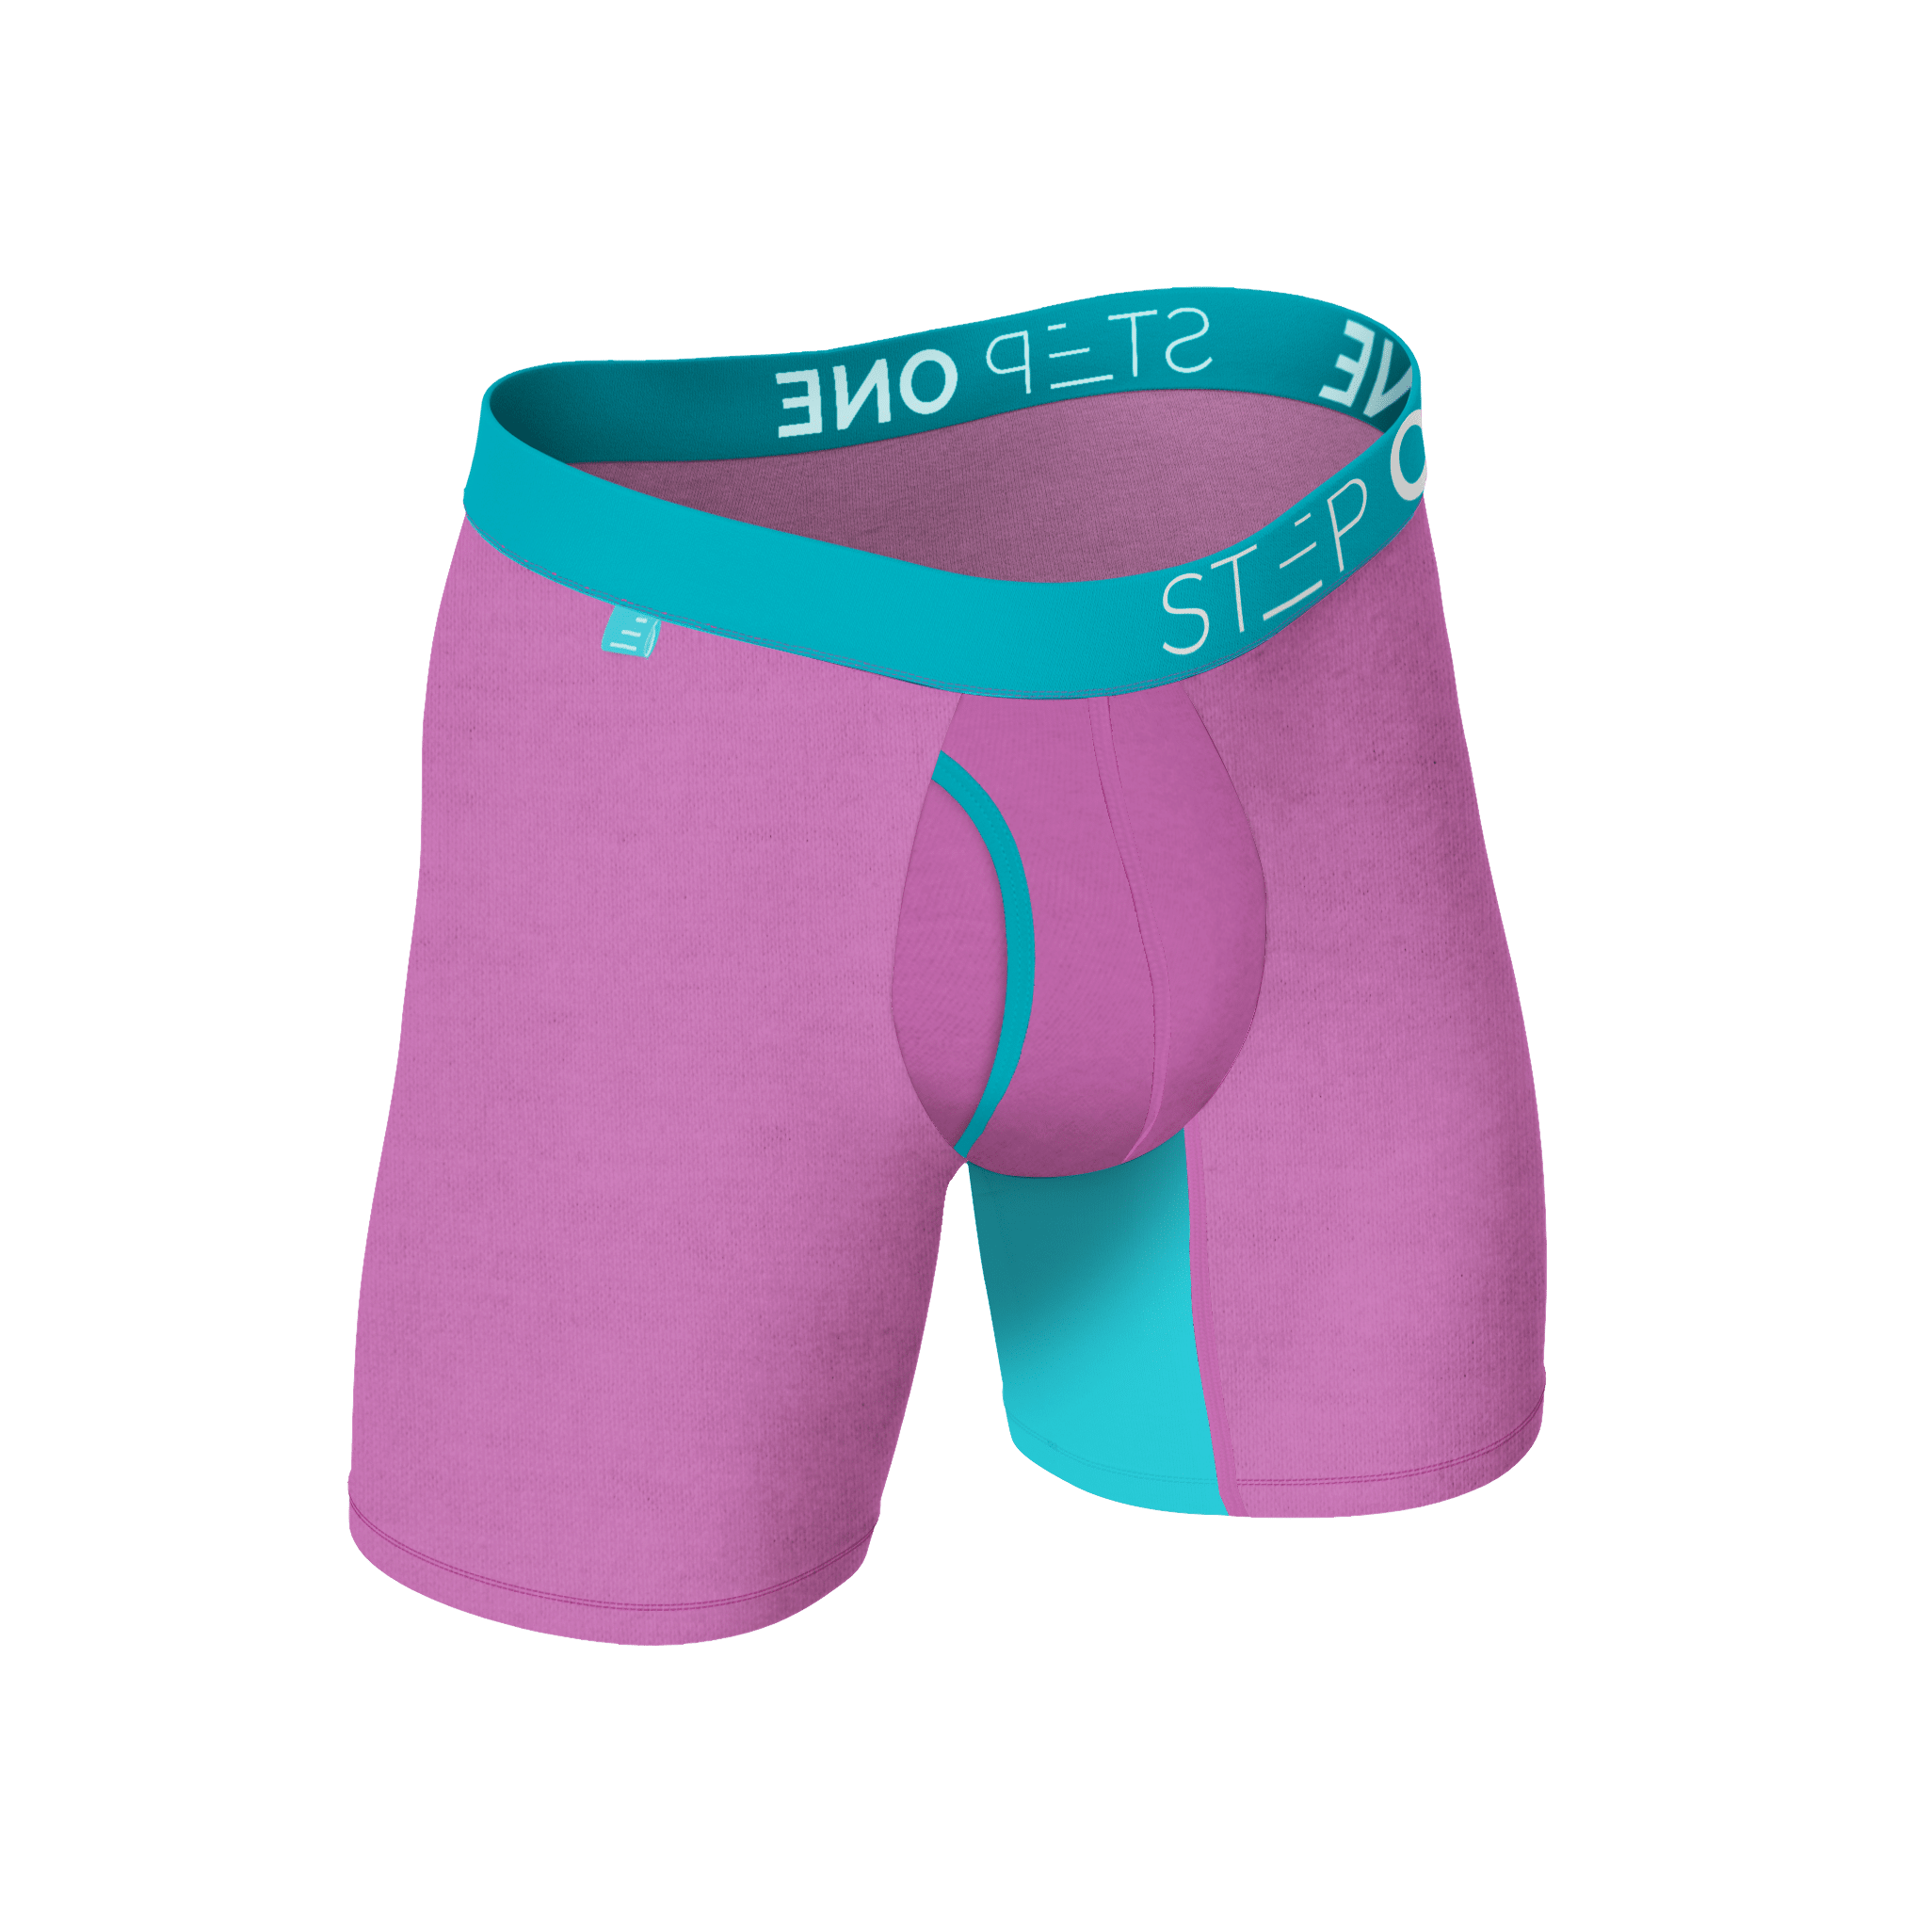 Mens Bamboo Underwear Online at Australia